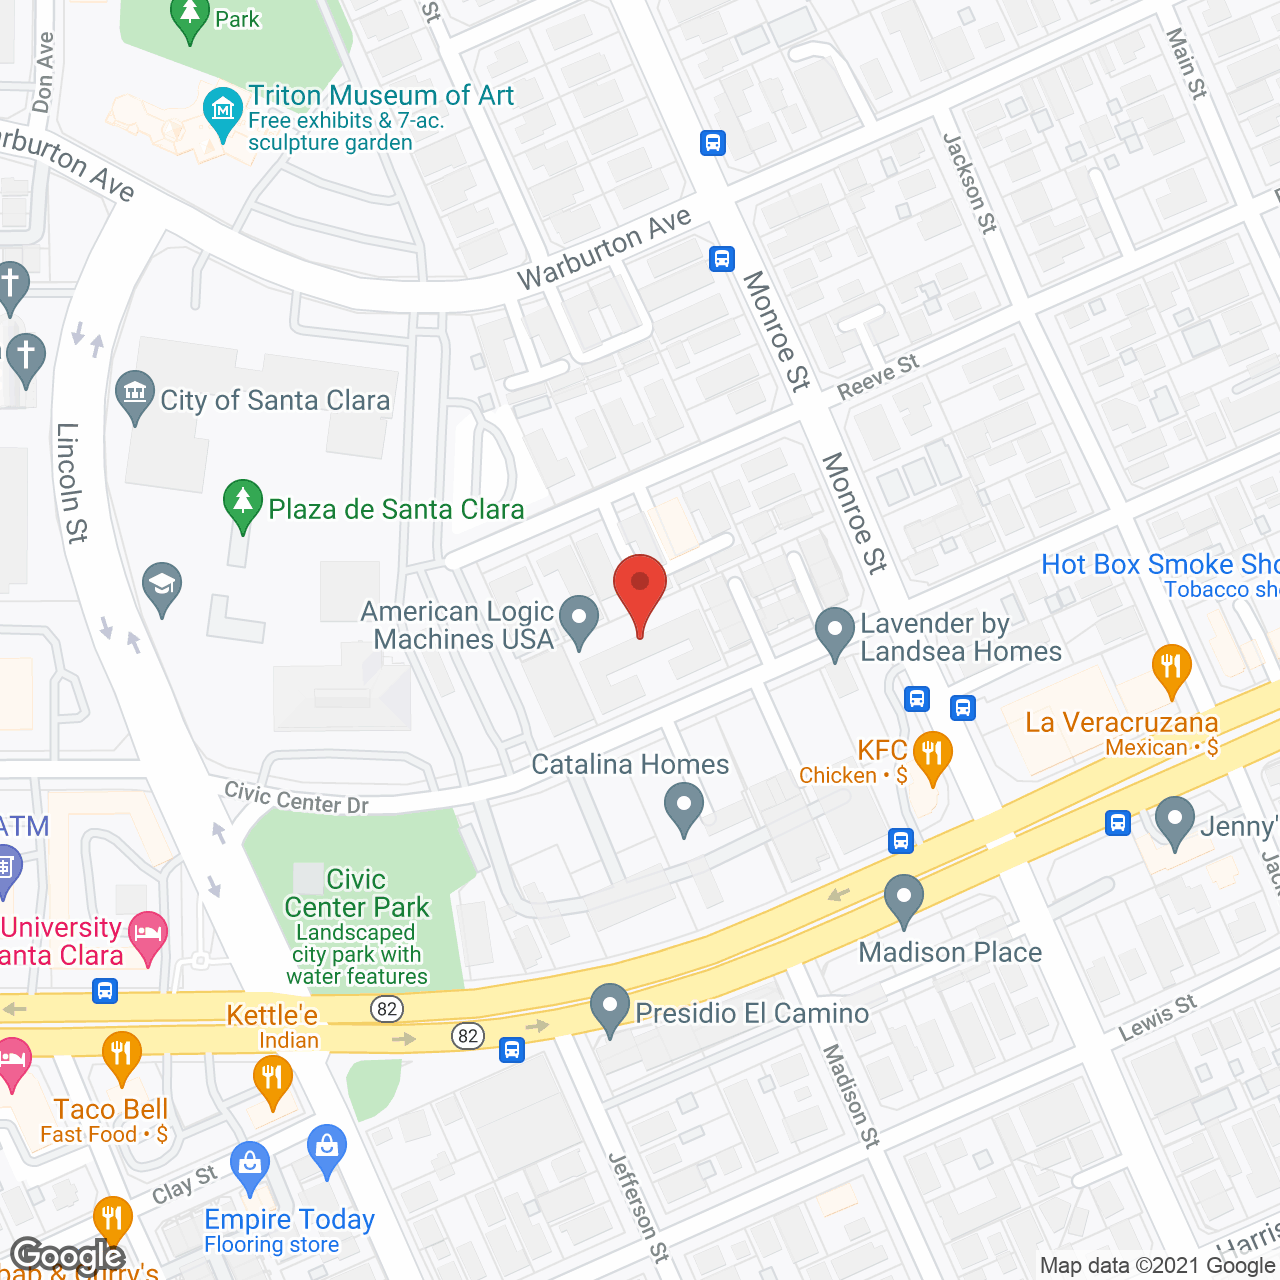 Civic Center at Santa Clara in google map